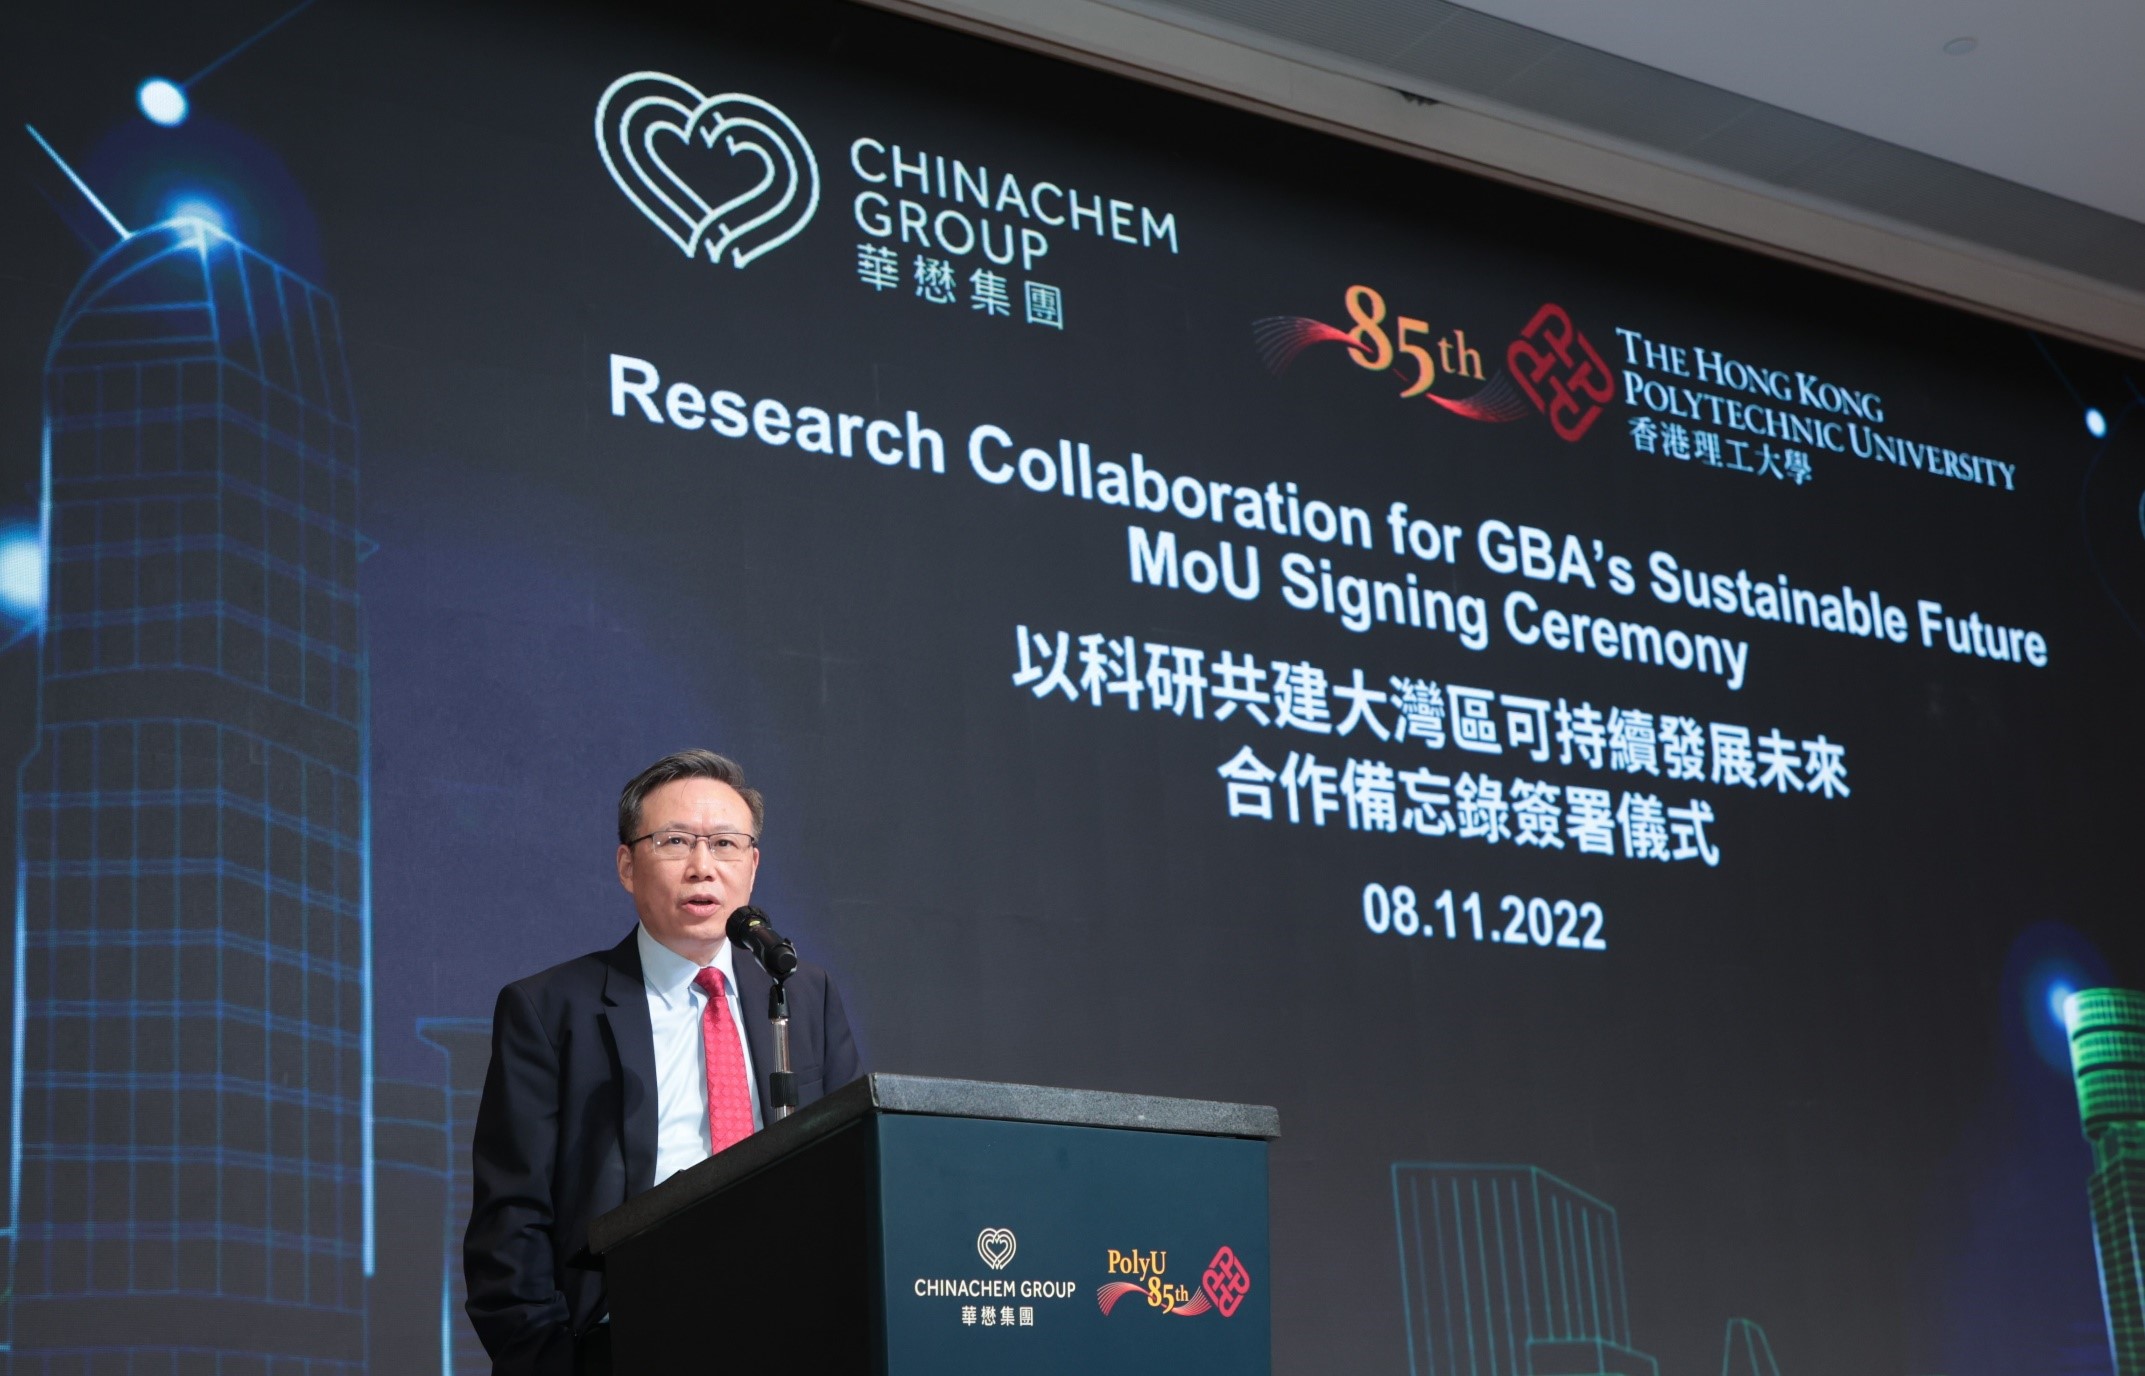 滕锦光教授指理大将继续积极与合作夥伴和社会各 界共同努力，将科研成果转化为实际的应用方案，为 香港、国家及世界建造更宜居及可持续发展的社区。